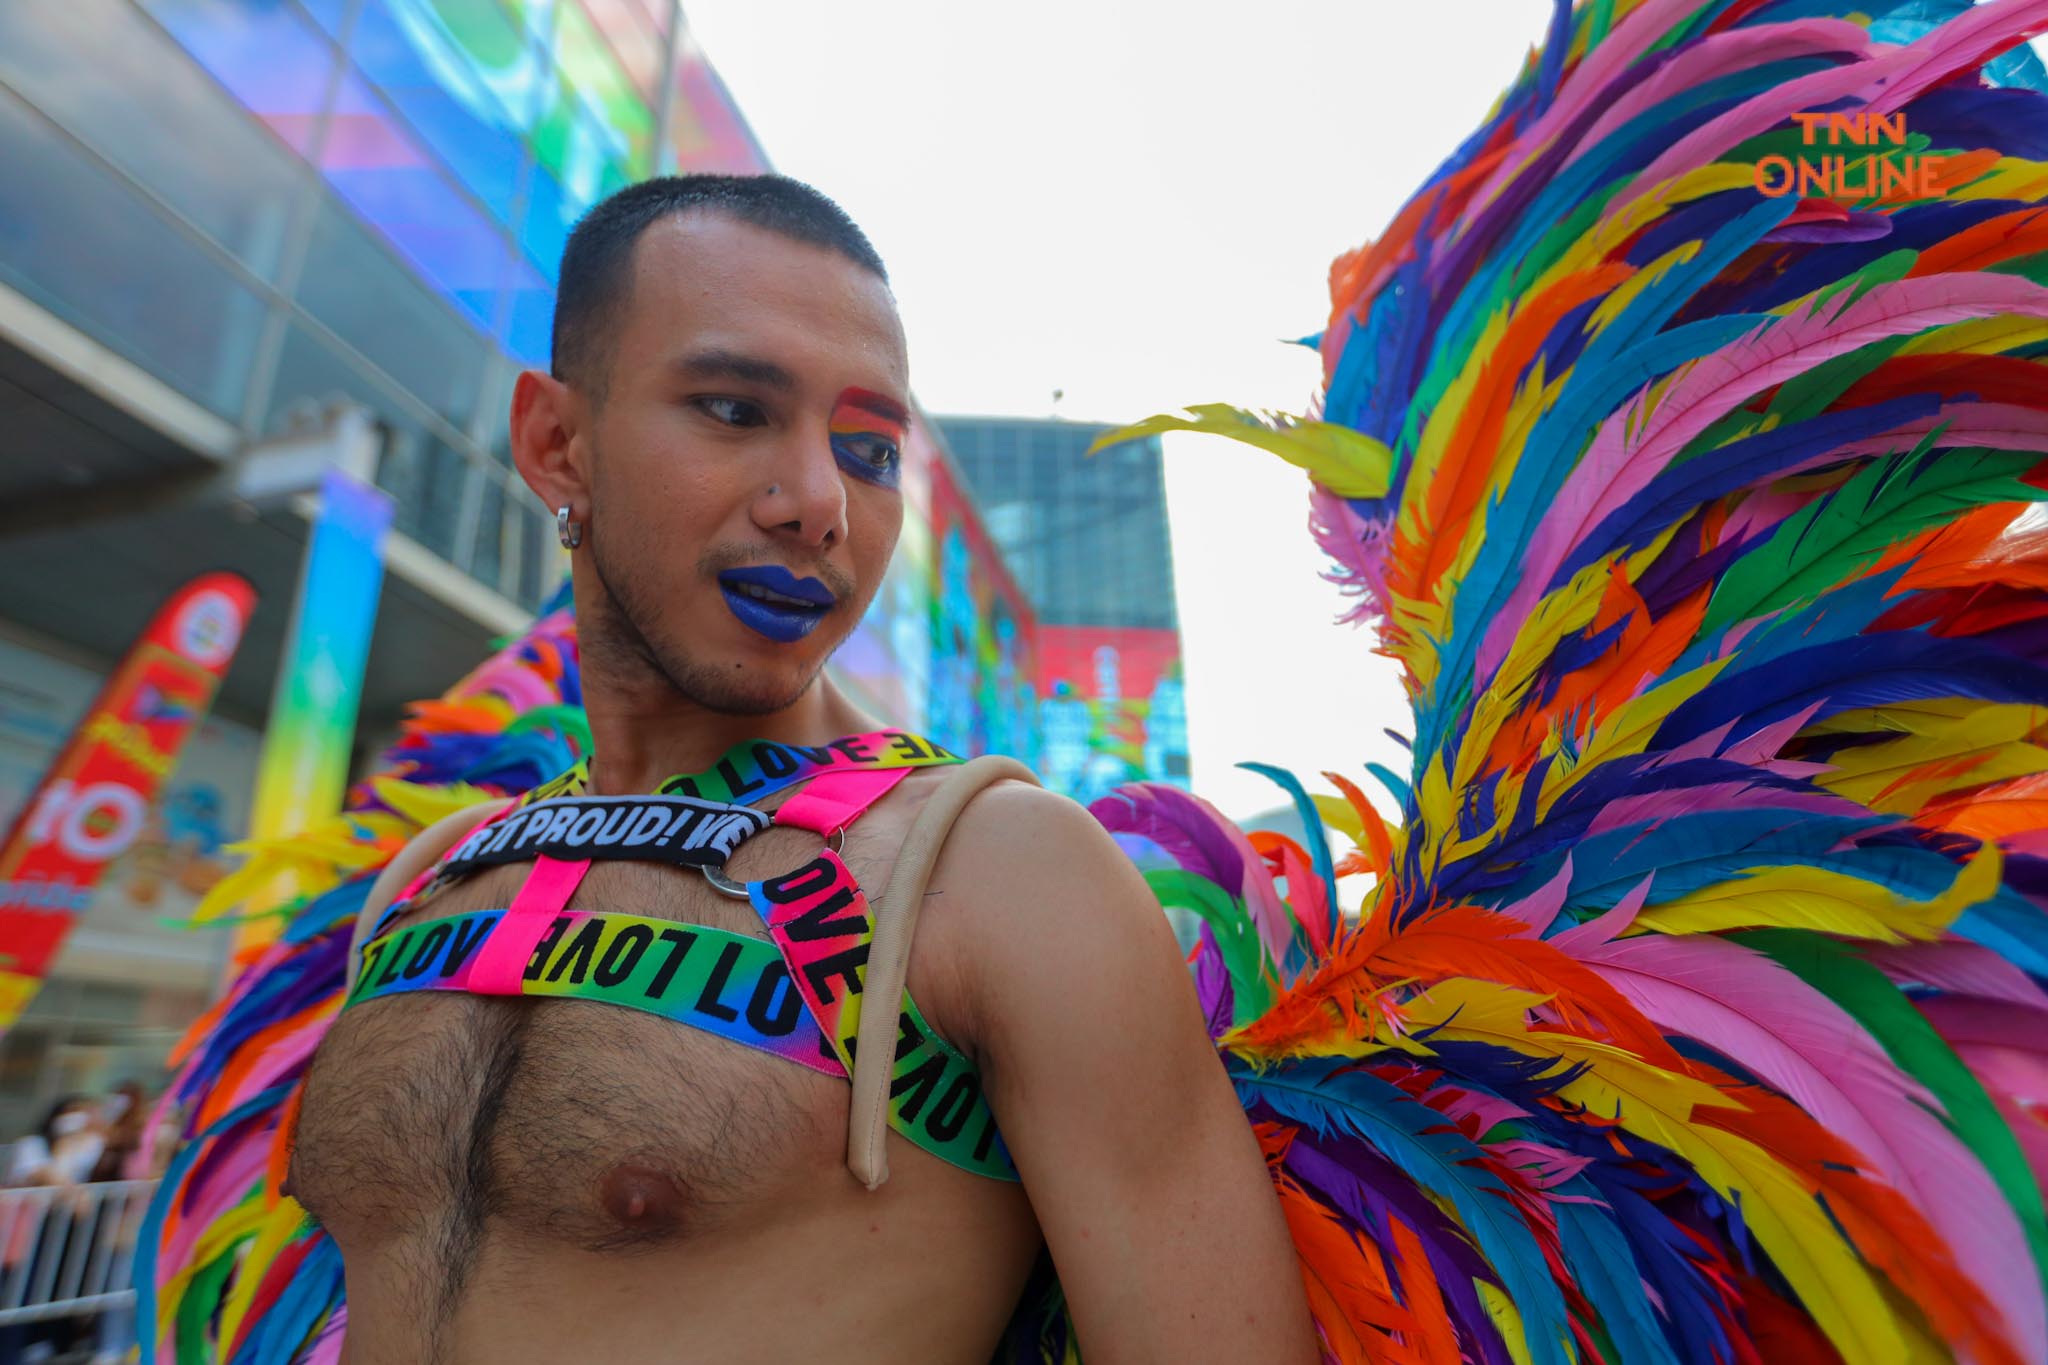 อลังการพาเหรด LGBTQIAN+ ร่วมฉลอง Pride Month สุดยิ่งใหญ่ กว่า 500 ชีวิต